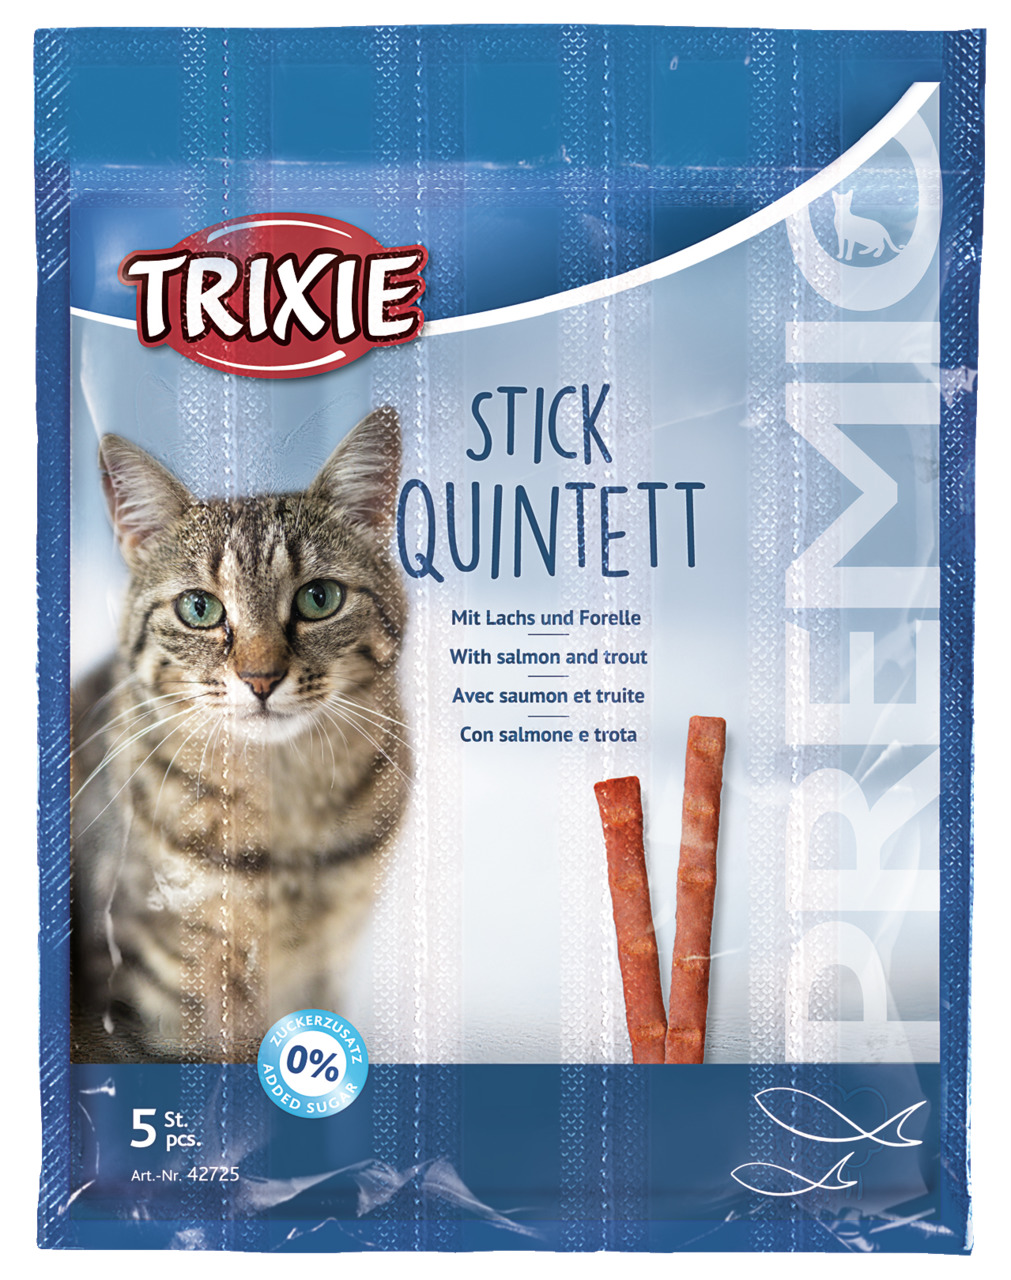 Sparpaket 2 x 5 g Trixie Premio Stick Quintett mit Lachs und Forelle Katzen Snack